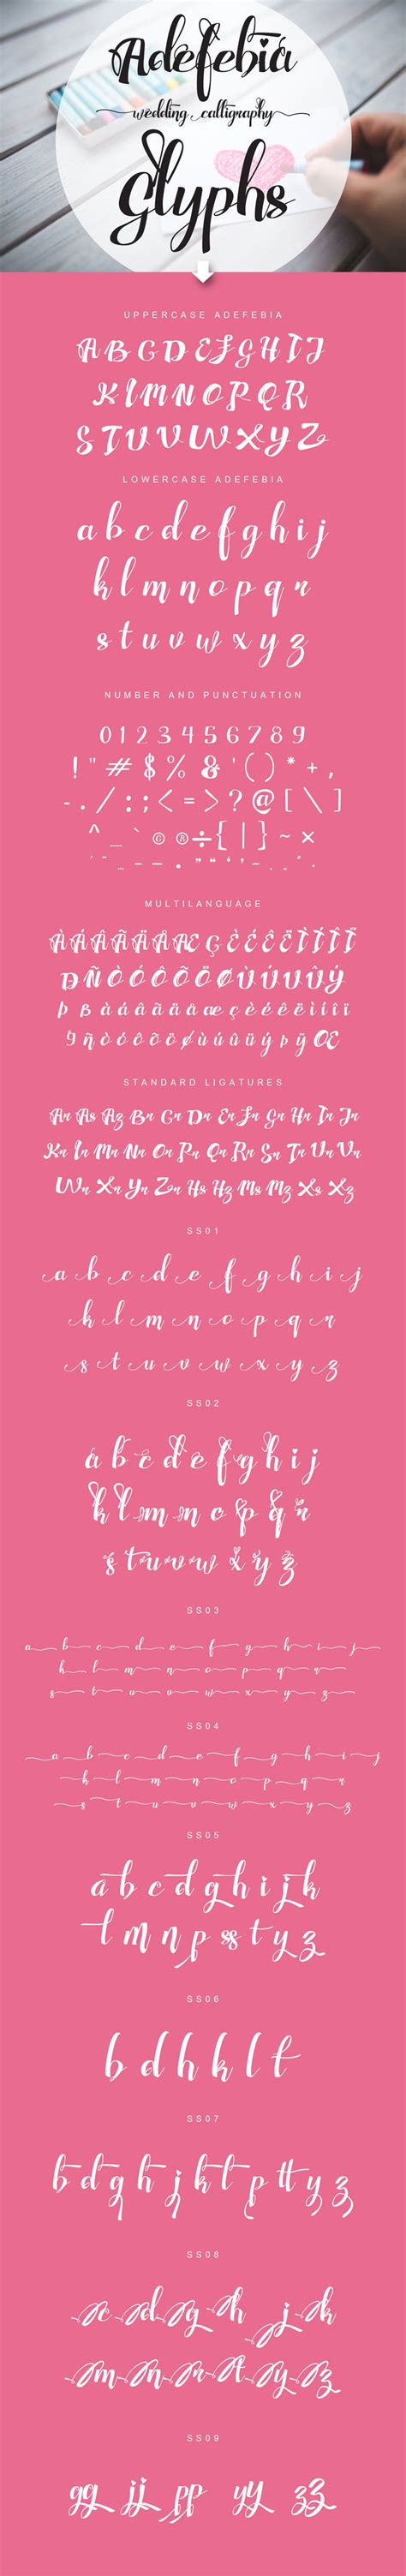 Adefebia Wedding Script Font By Feydesign Thehungryjpeg